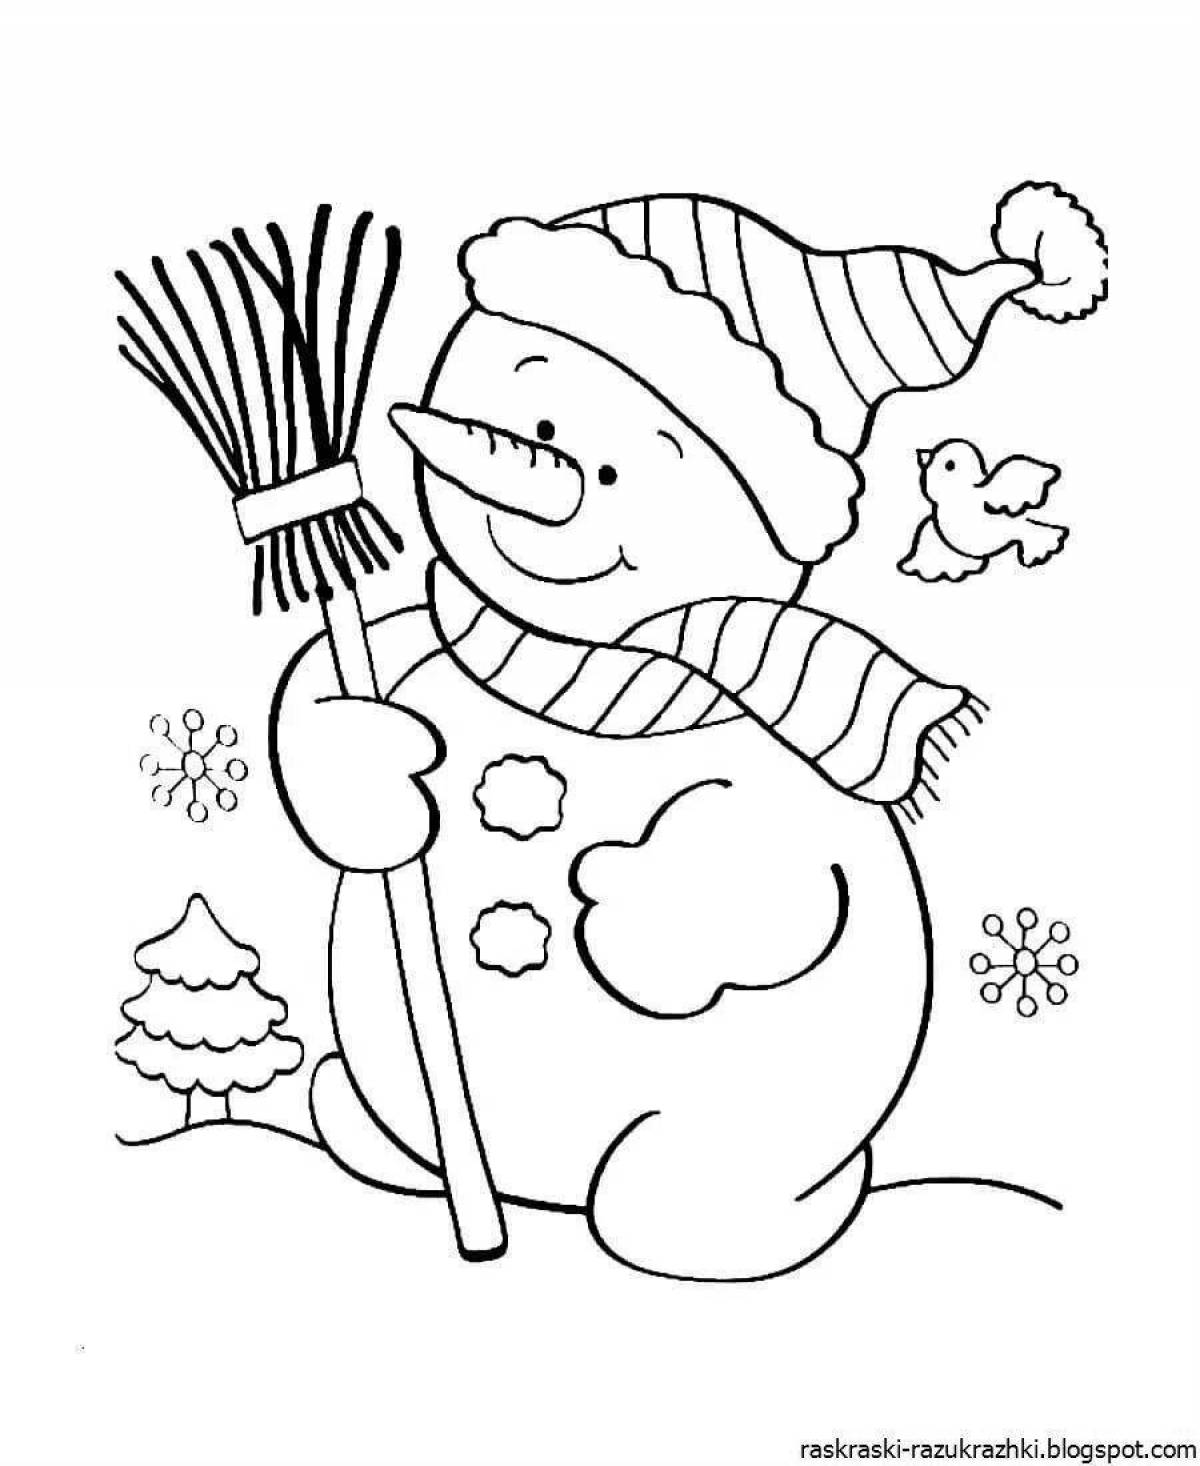 Увлекательный рисунок снеговика для детей